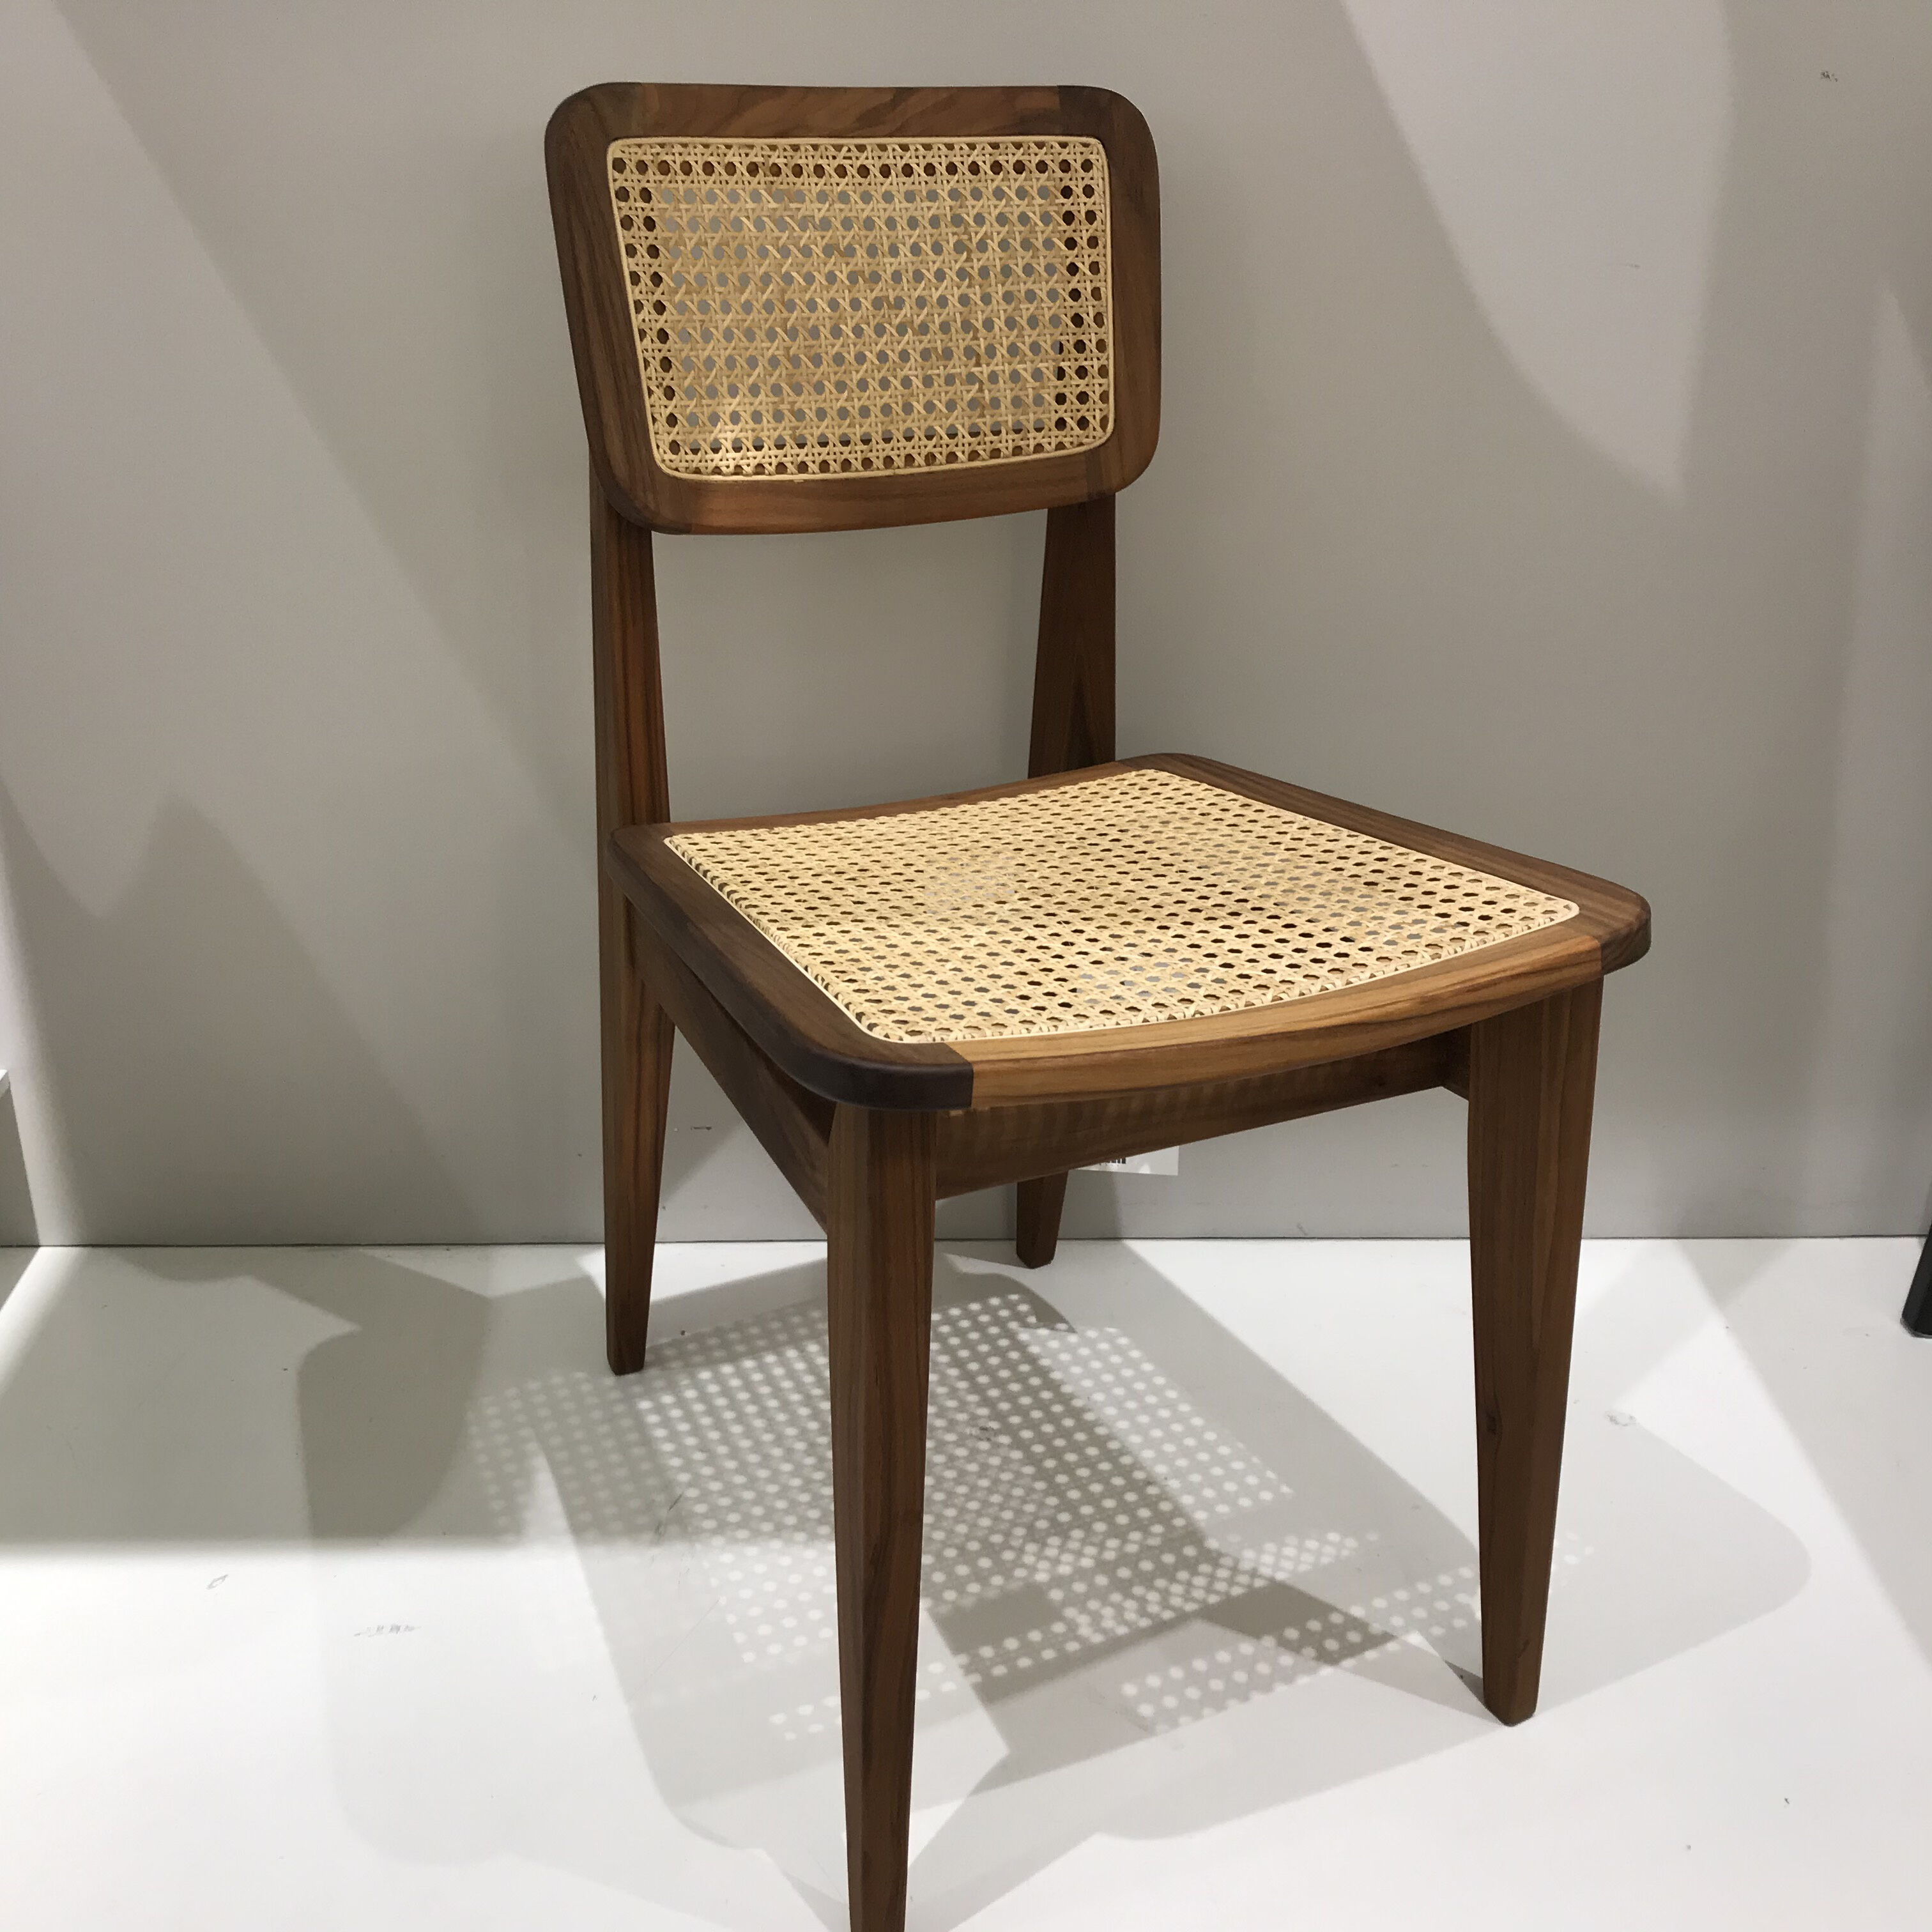 gubi-stuhl-c-chair-2-a-all-woven-cane-rattan-amerikanischer-nussbaum-mf-0004930-001-4